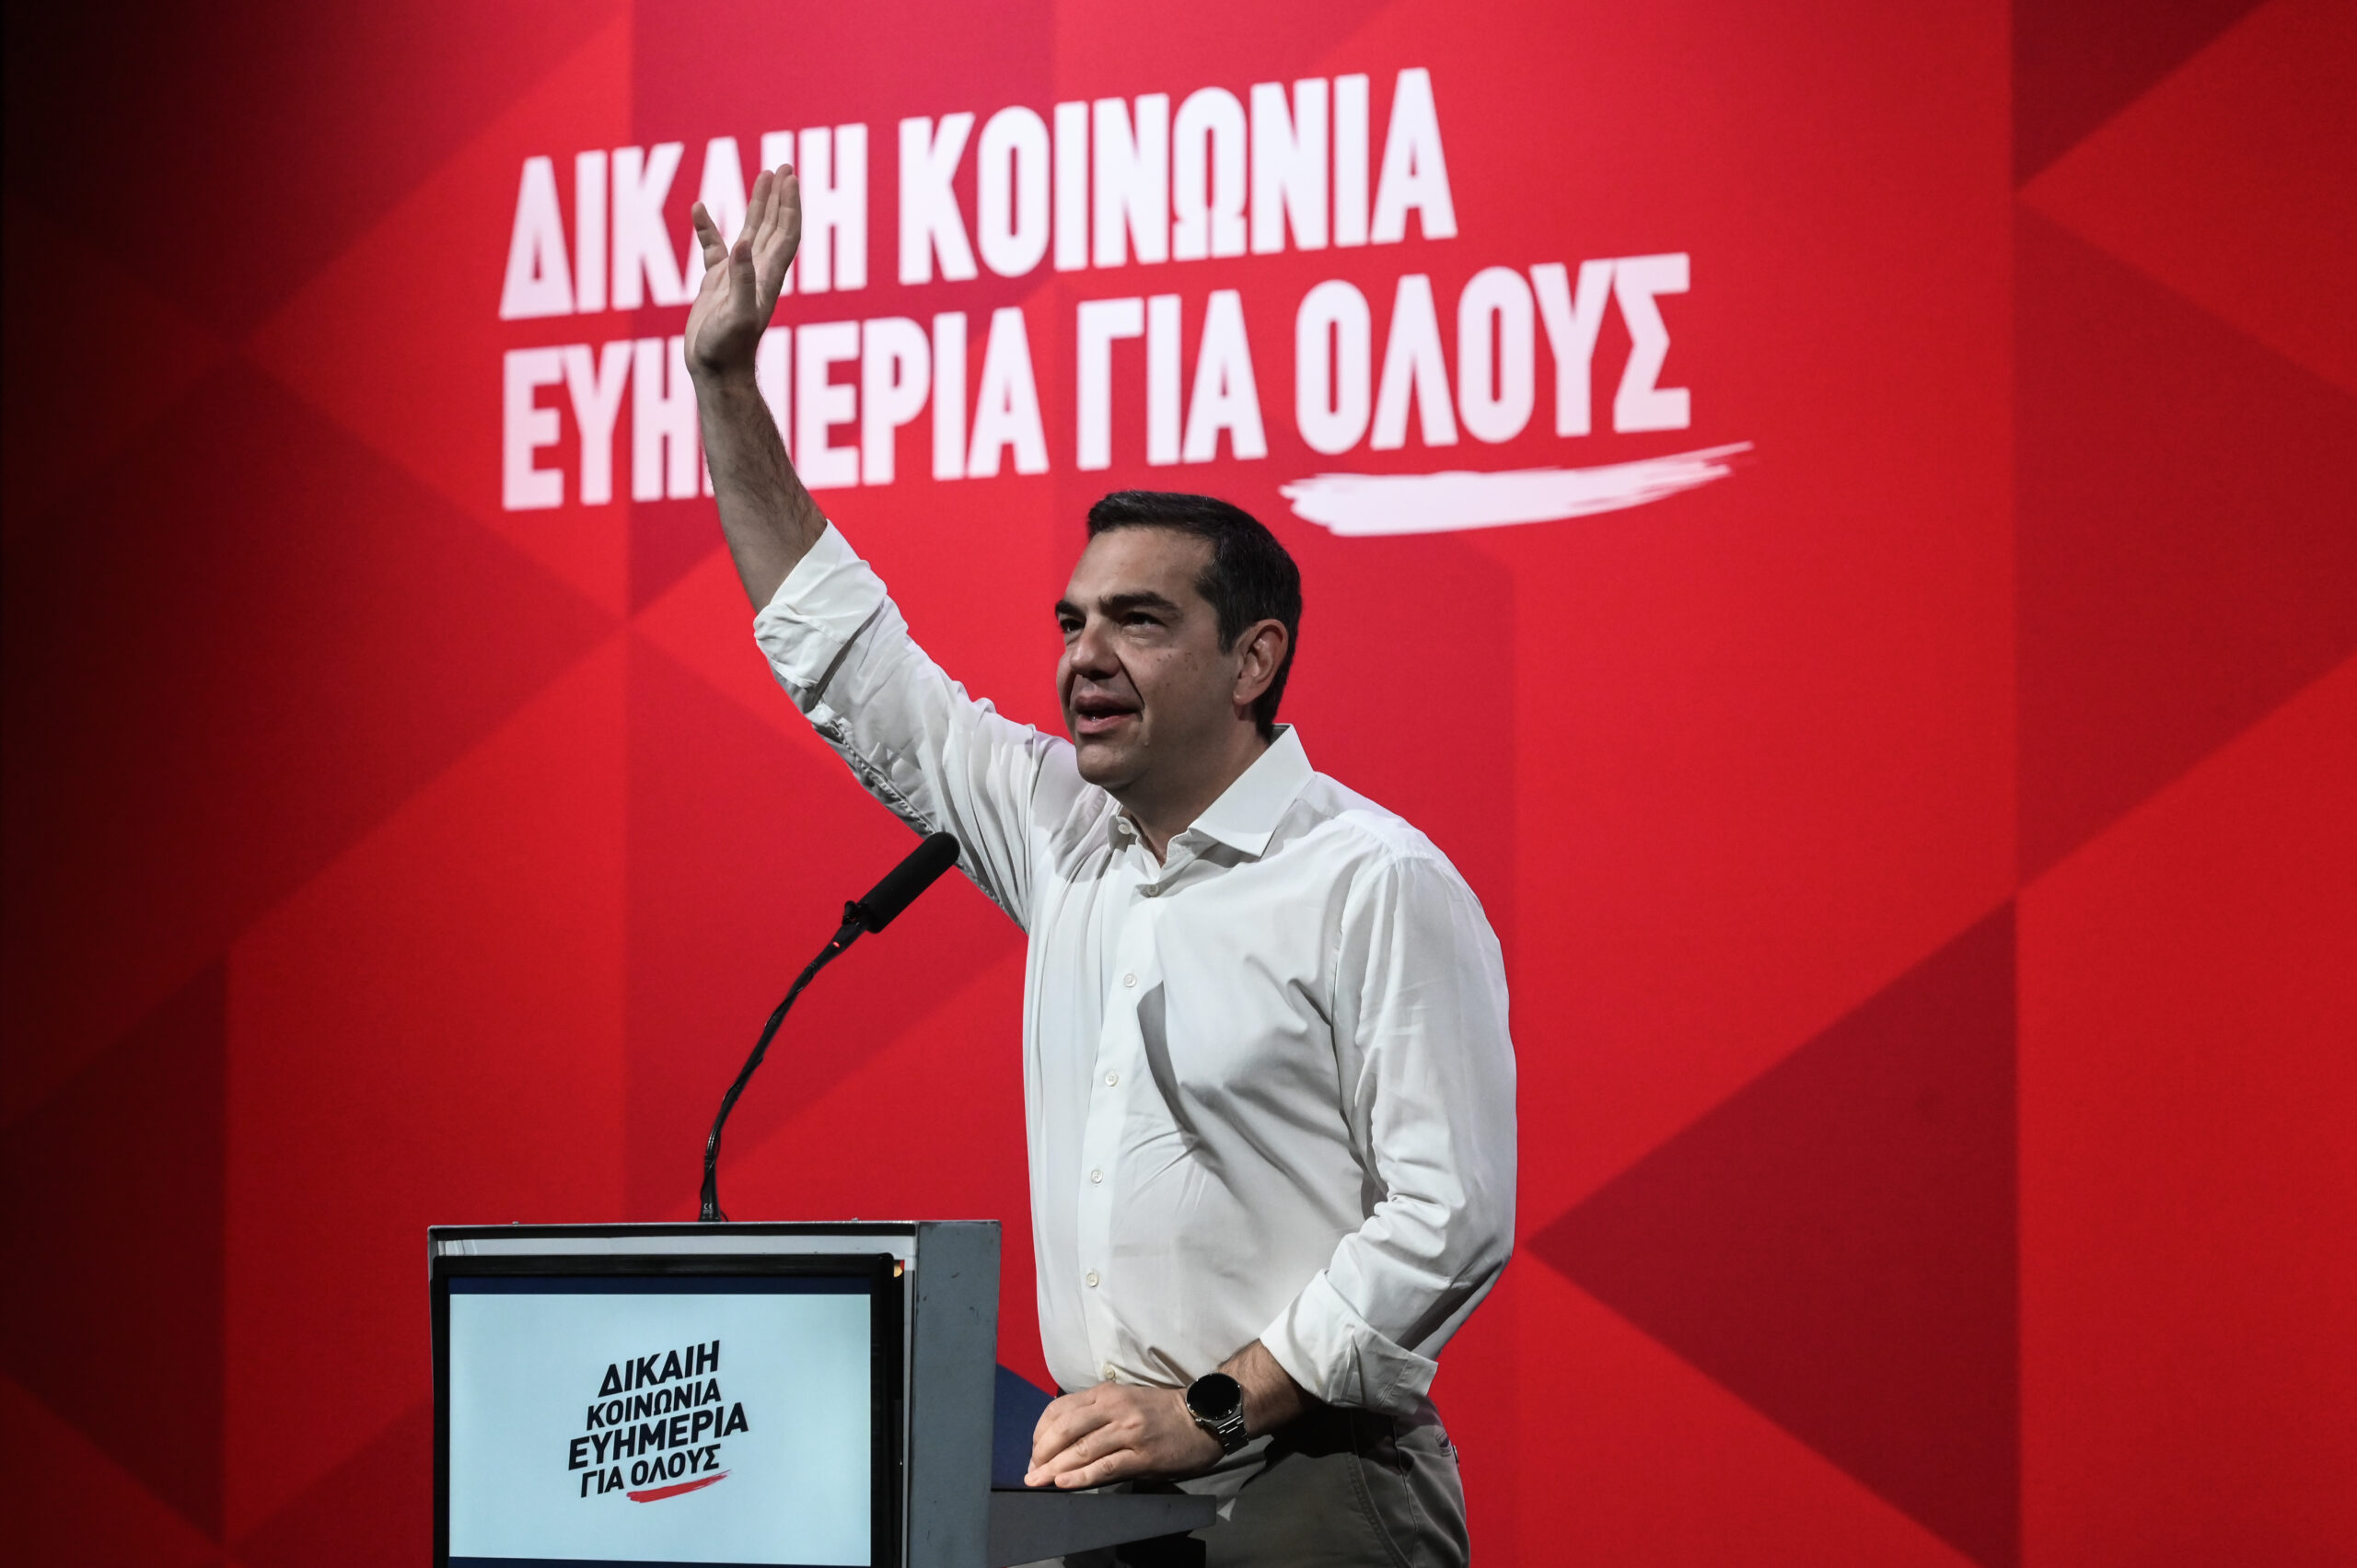 Τσίπρας: Κάθε ψήφος στα μικρότερα κόμματα και όχι στον ΣΥΡΙΖΑ, ενισχύει και εξυπηρετεί την ακραία νεοφιλελεύθερη Δεξιά